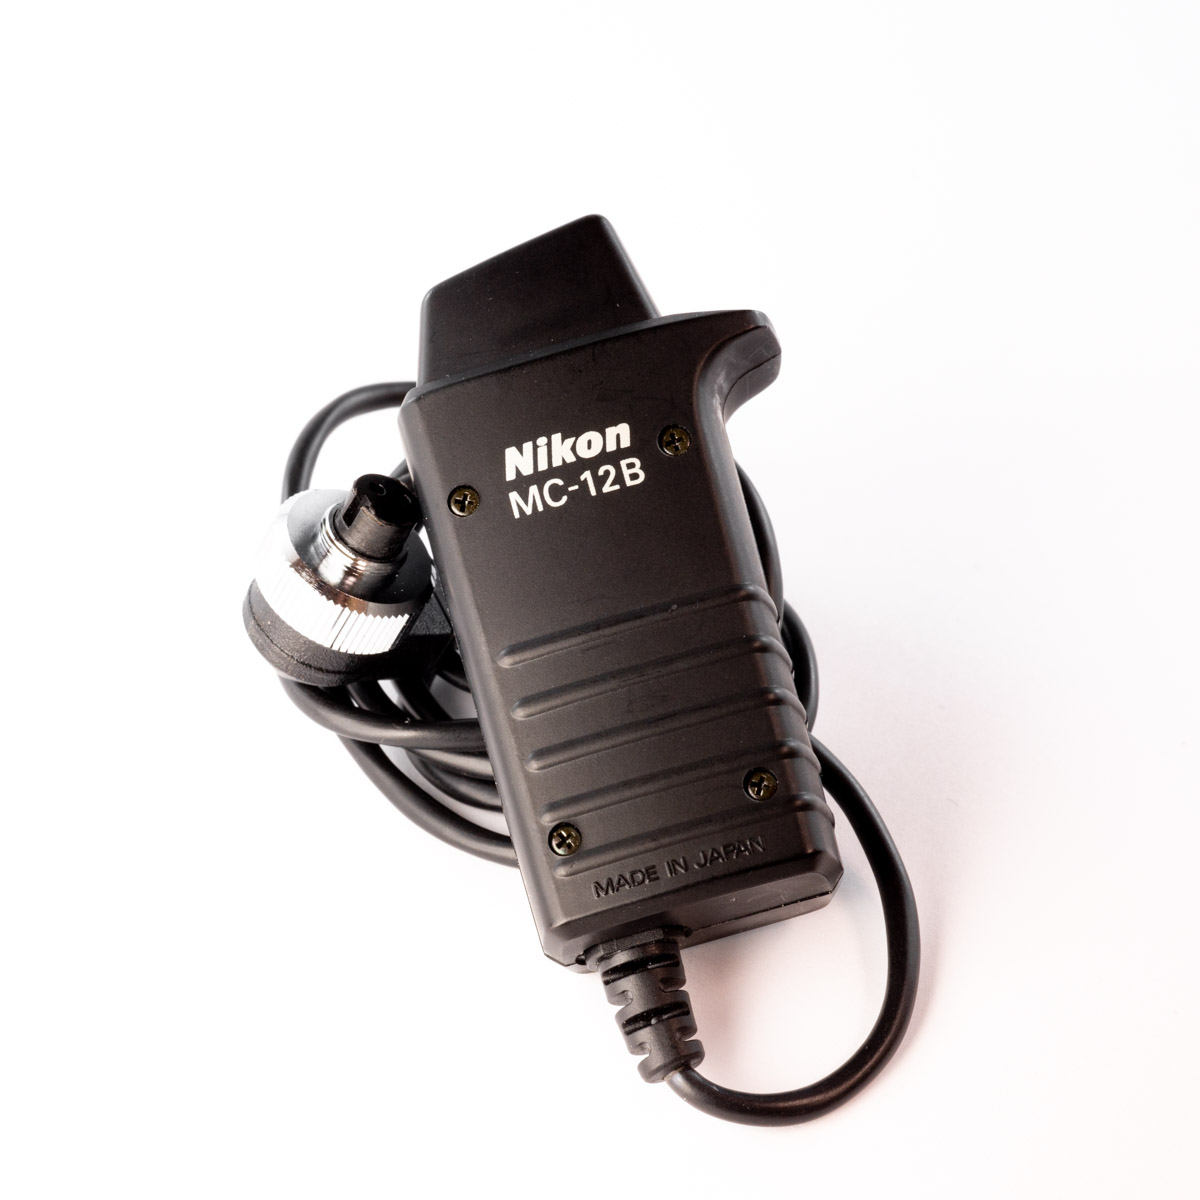 Nikon MC-12B remote release cord *A*